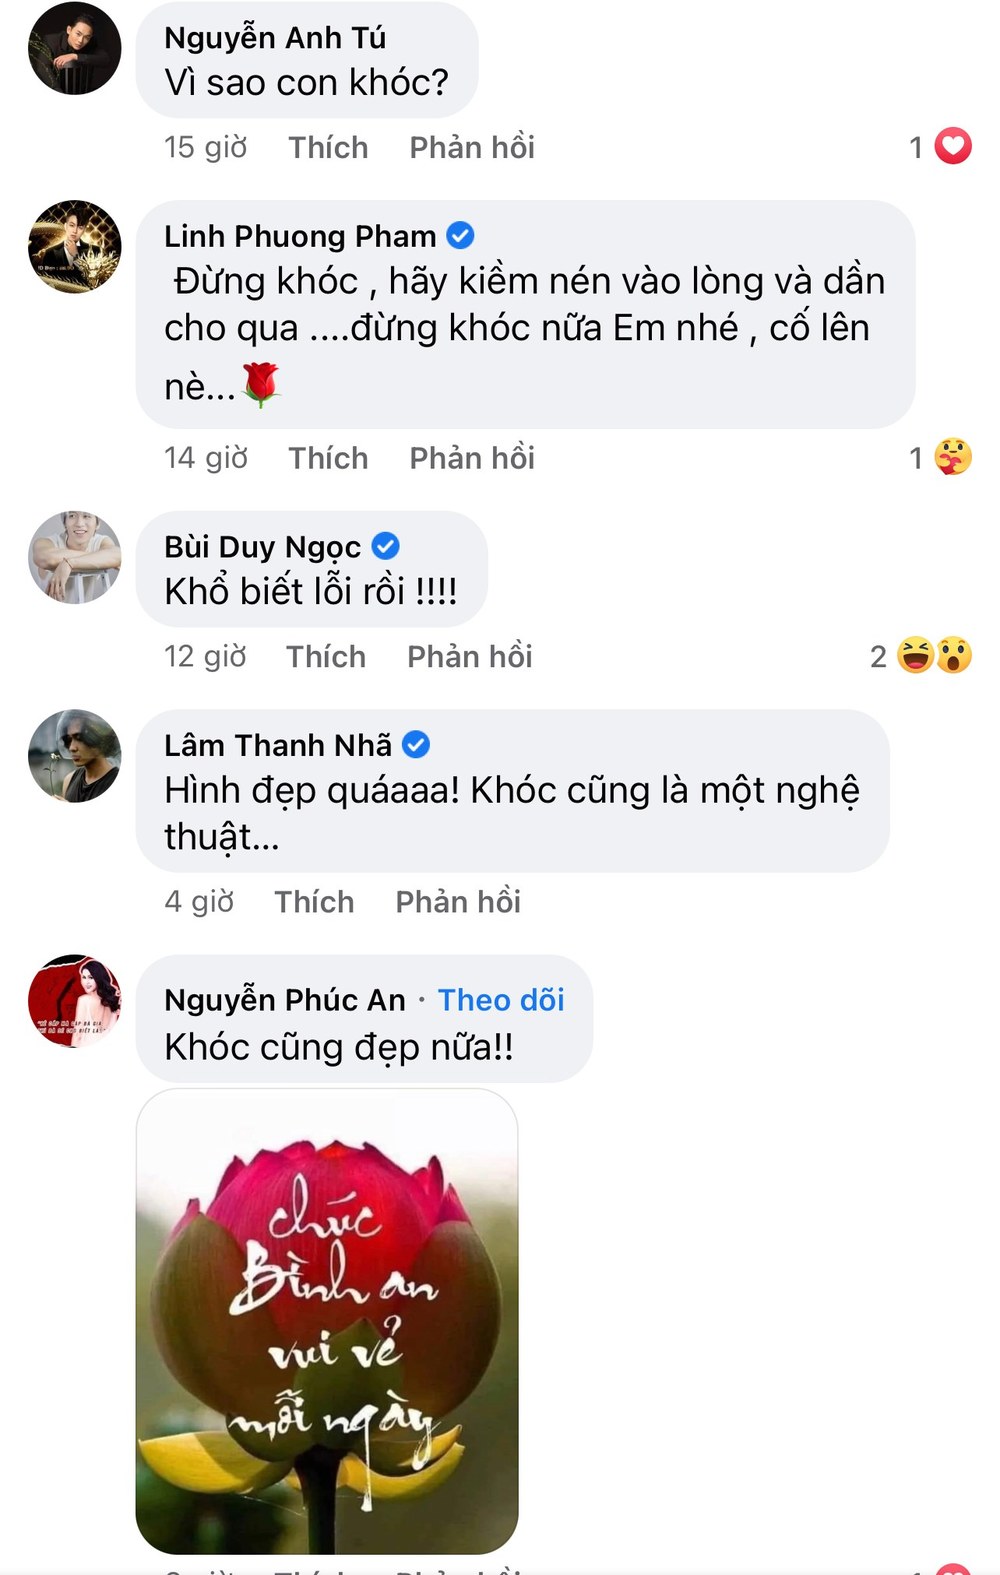  
Dàn sao Việt bình luận khi thấy Bảo Yến Rosie đăng chia sẻ buồn. (Ảnh: Chụp màn hình)